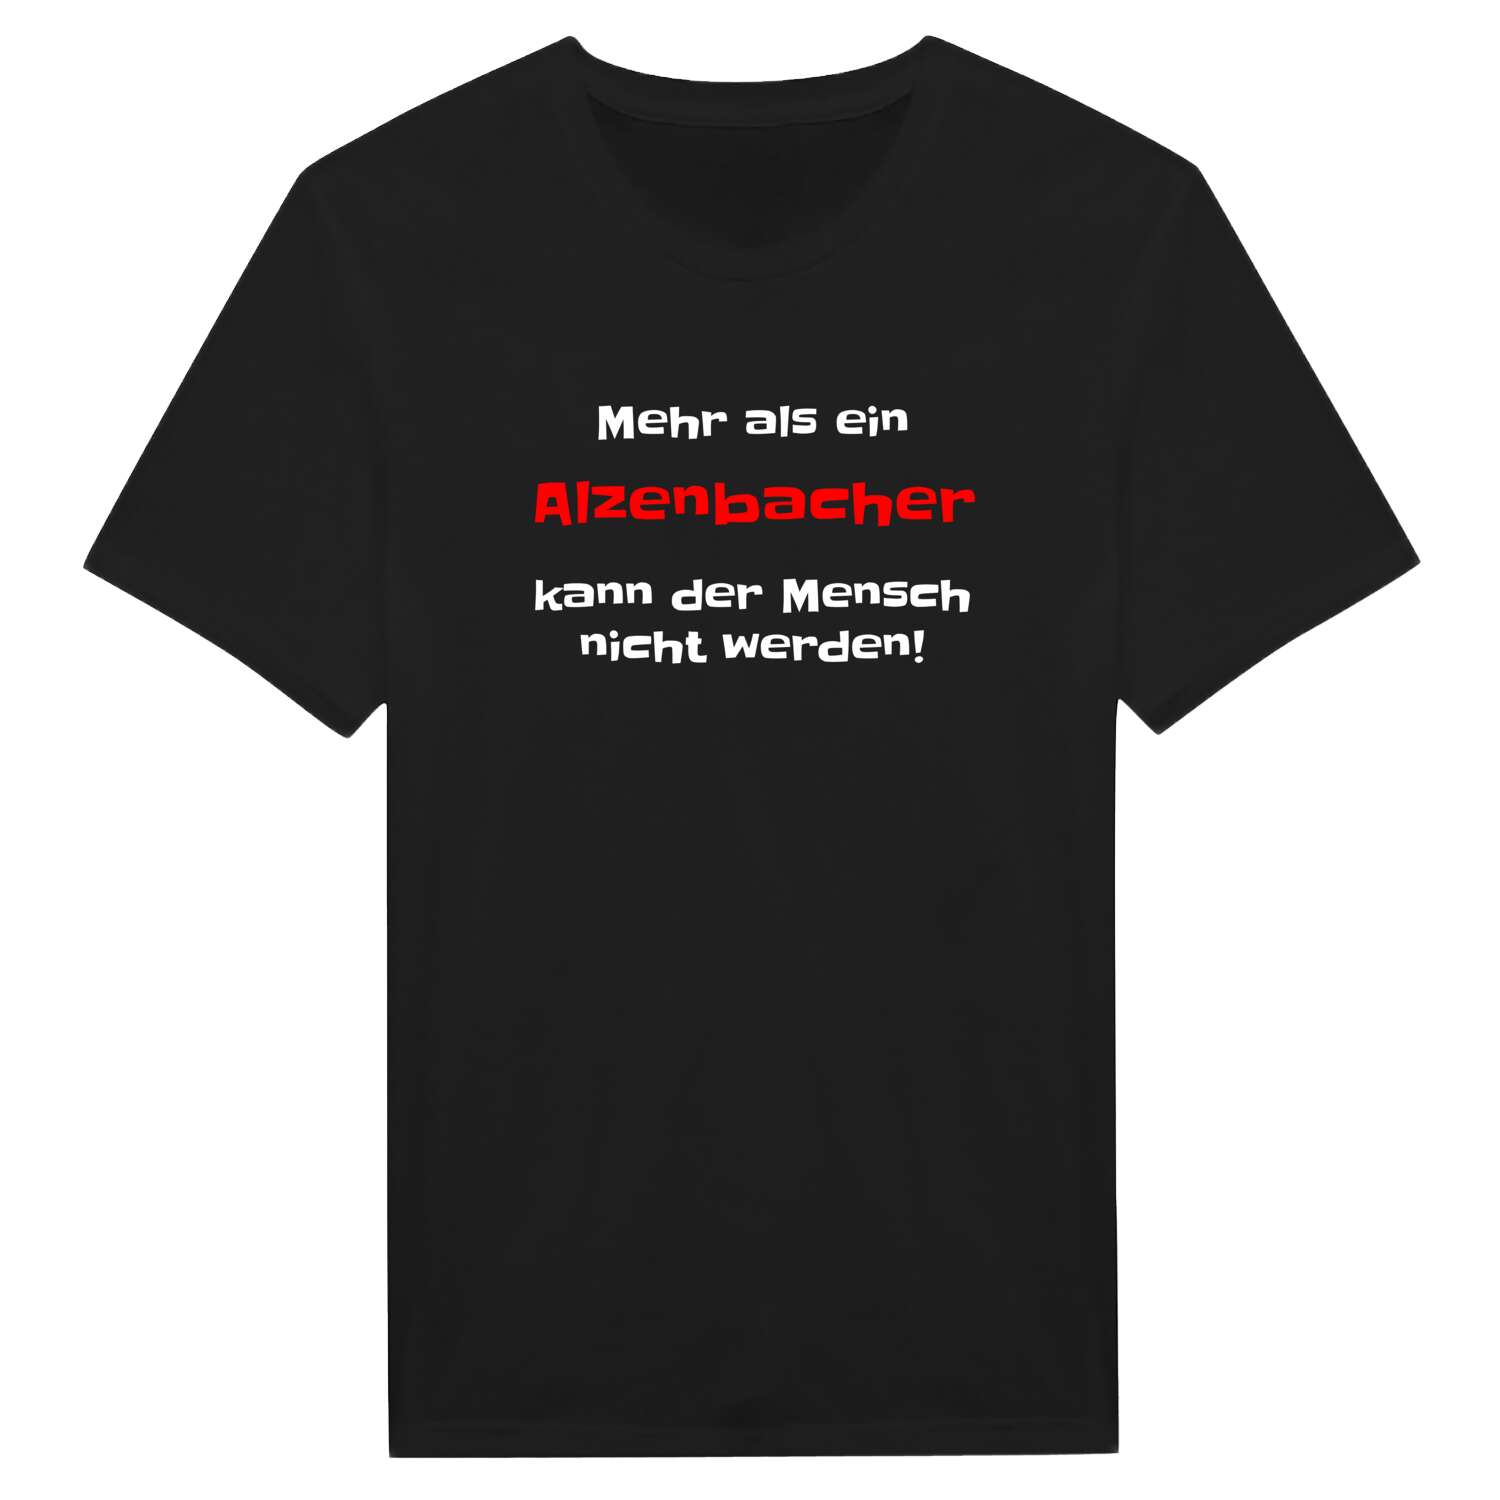 Alzenbach T-Shirt »Mehr als ein«